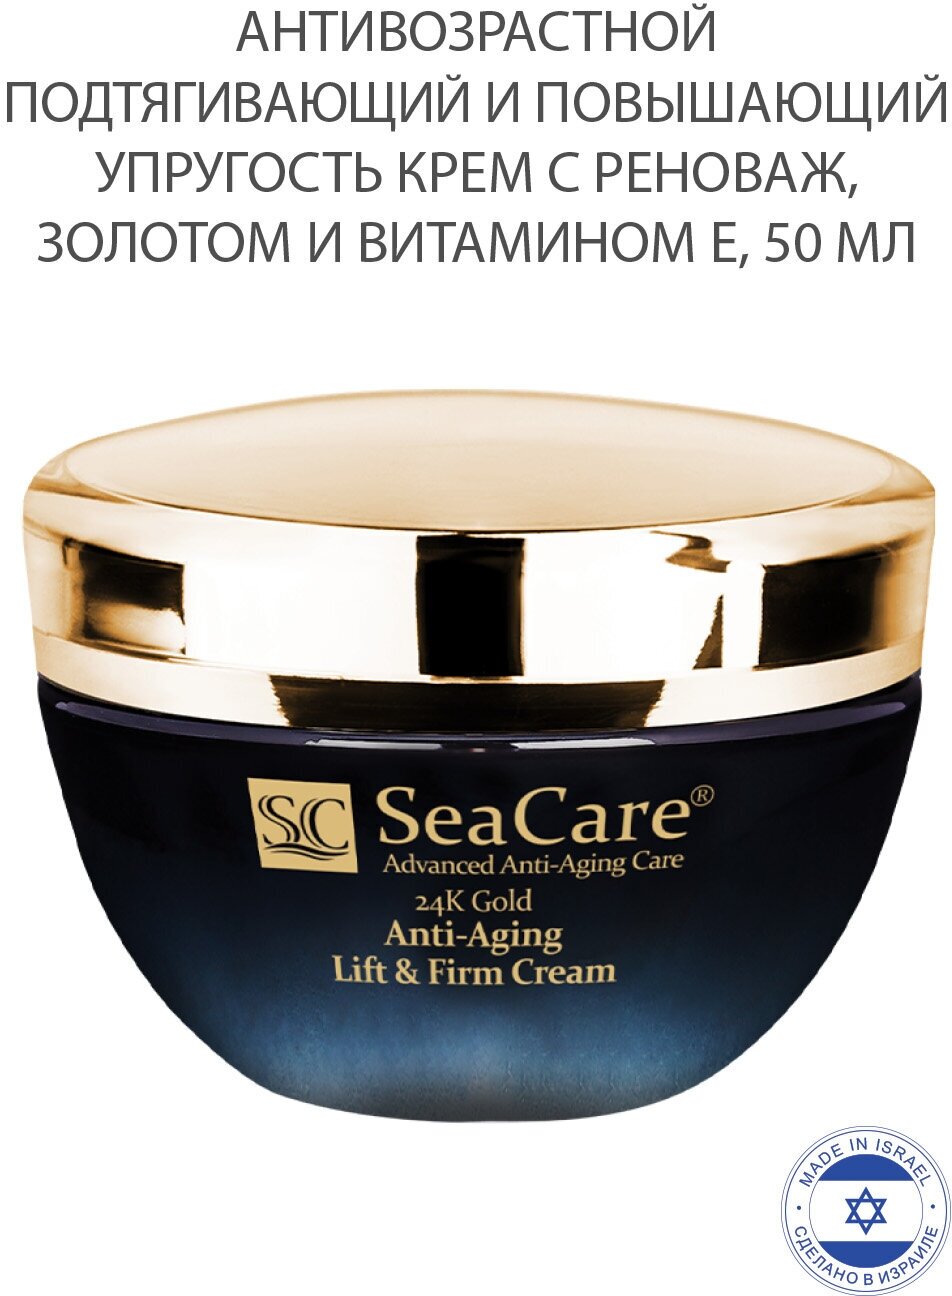 SeaCare, Антивозрастной подтягивающий и повышающий упругость крем с Реноваж, Золотом и Витамином Е, 50мл